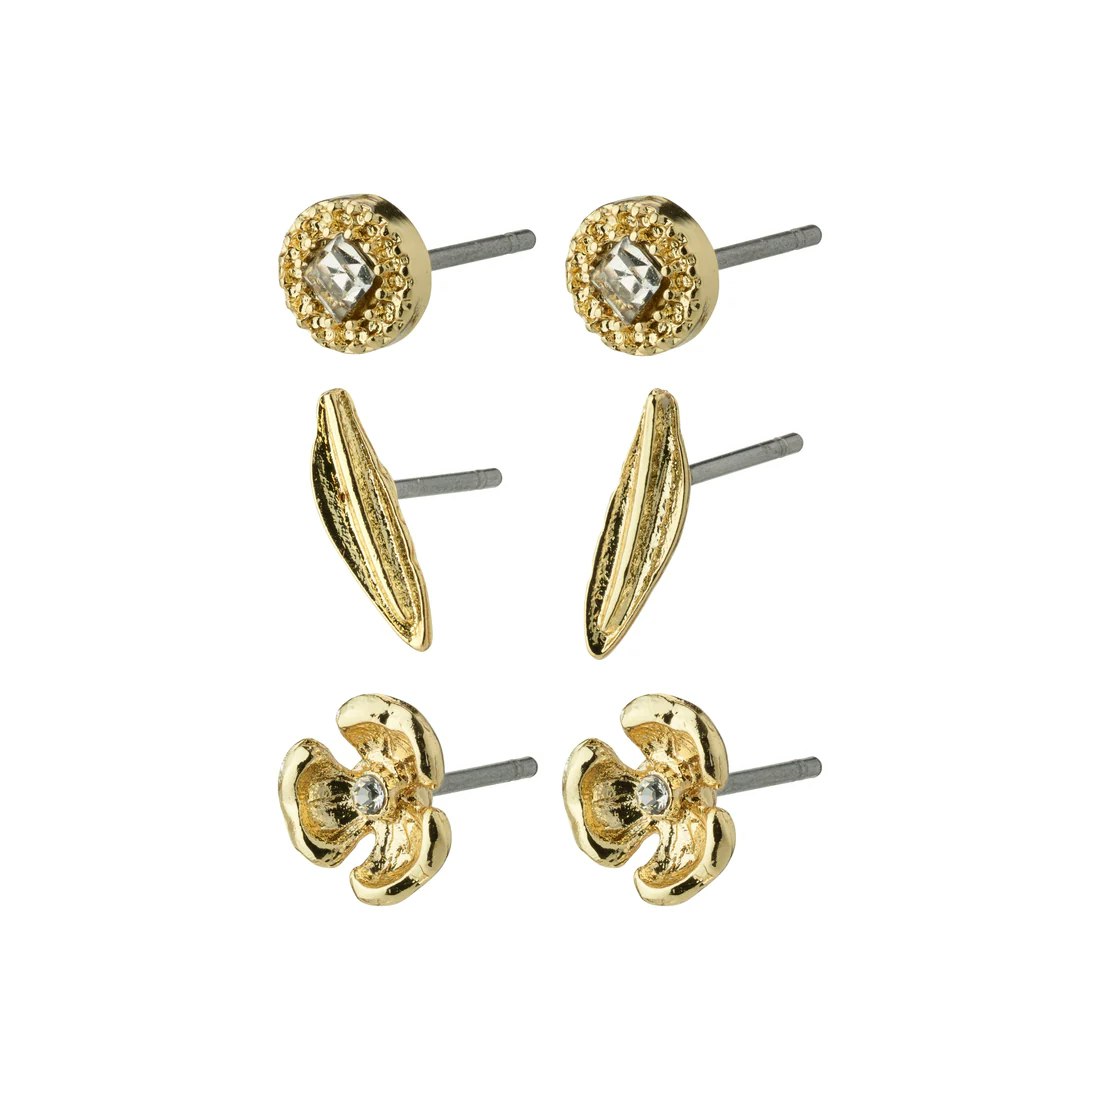 Echo Recycled Earrings 3-in-1 Set Gold Pilgrim